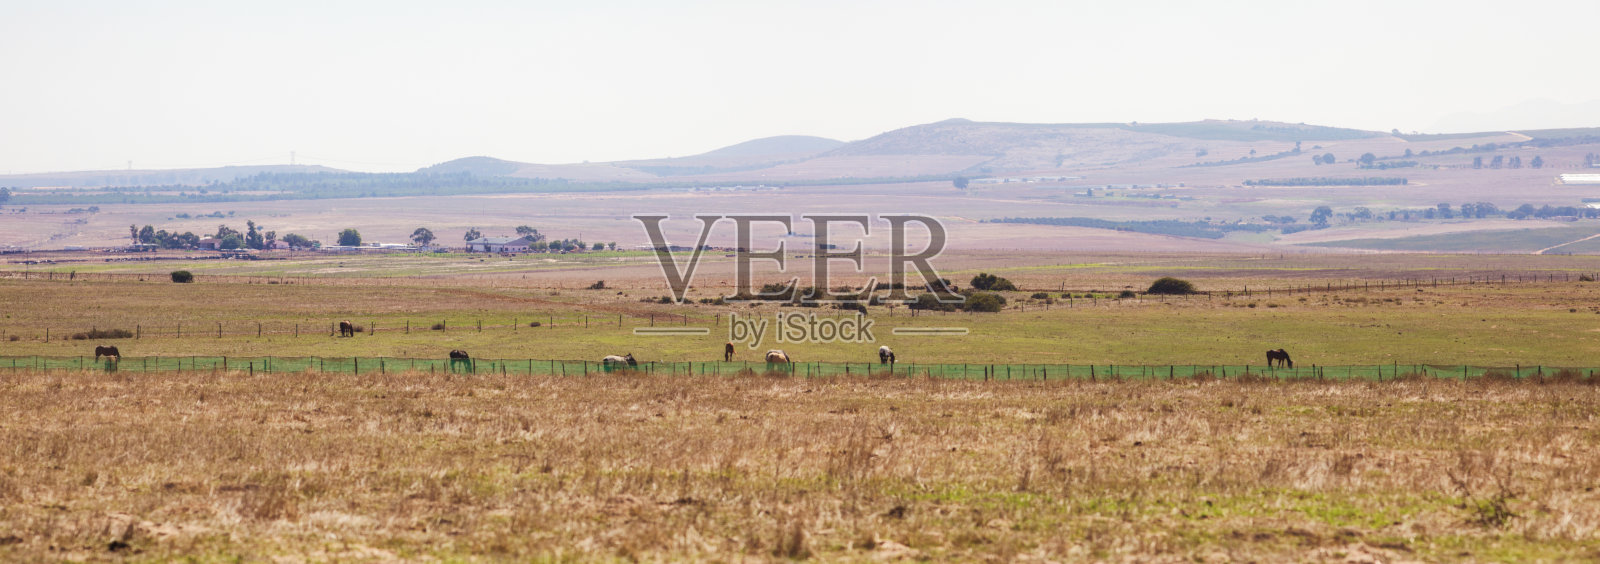 南非西部开普草原的土路全景照片摄影图片